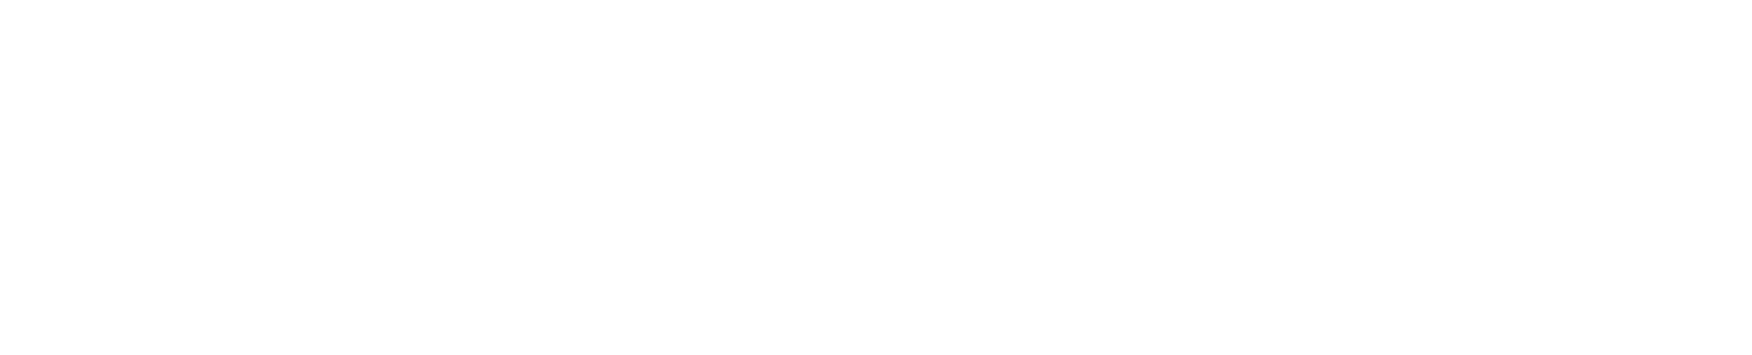 Logotipo do Plano de Recuperação, Transformação e Resiliência